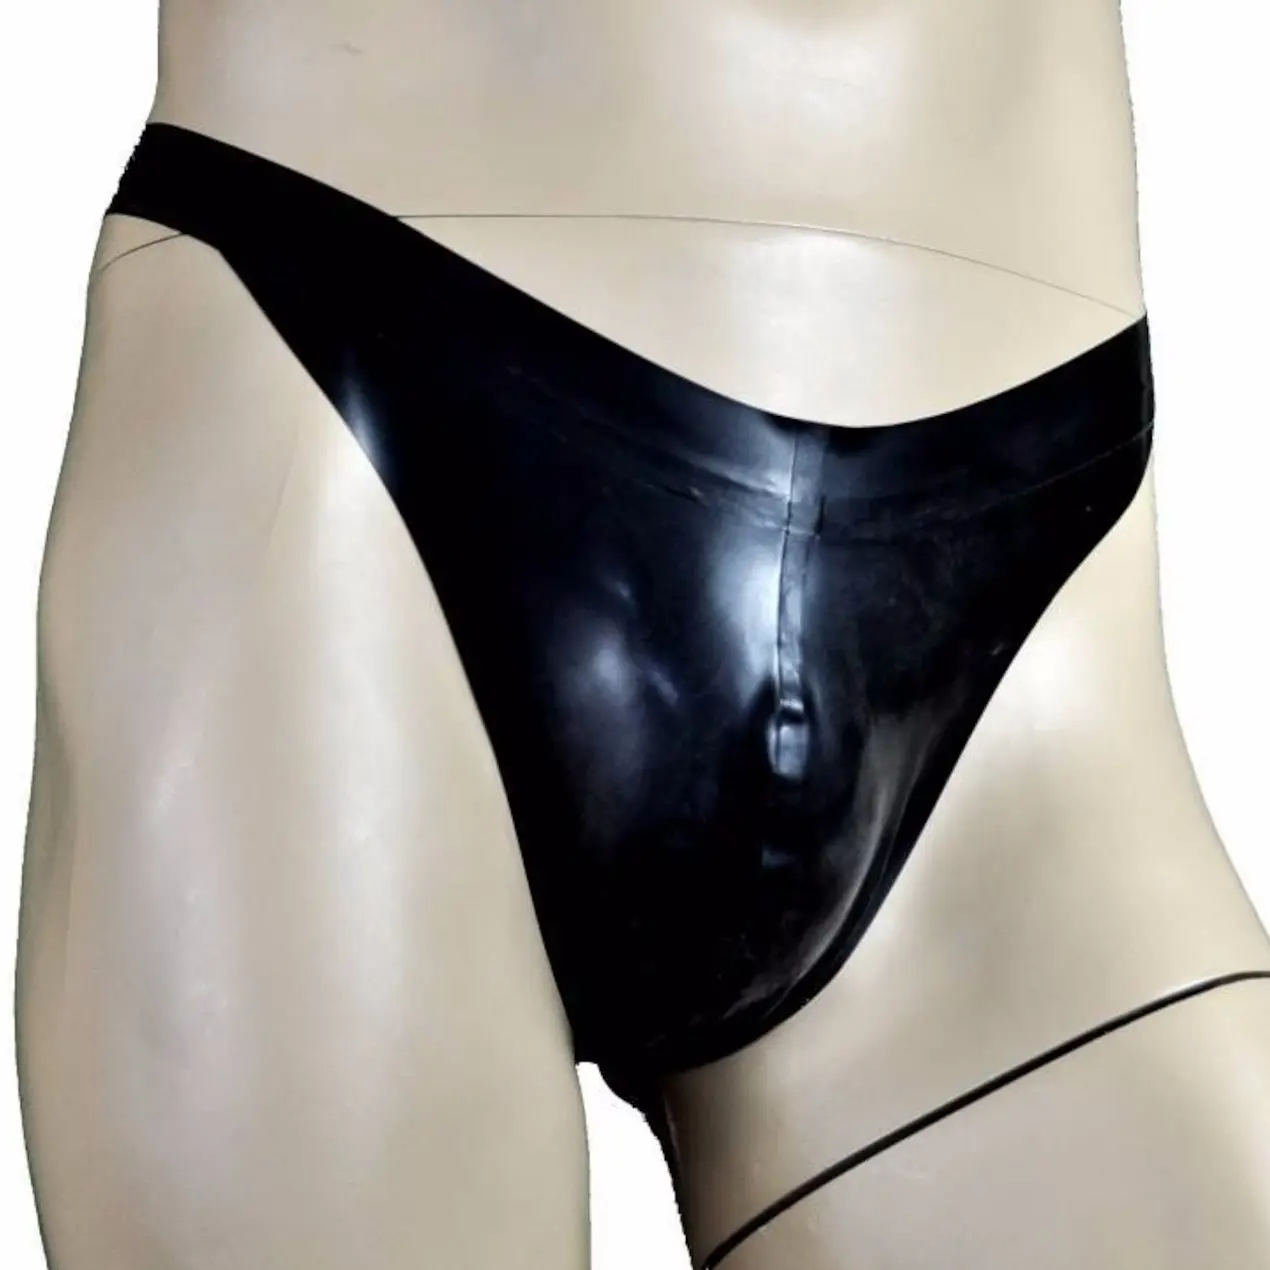 Yeni lateks 100% kauçuk Catsuit siyah pantolon şişme Cosplay kırmızı dekorasyon Gummi boyutu XS-XXL 0.4mm